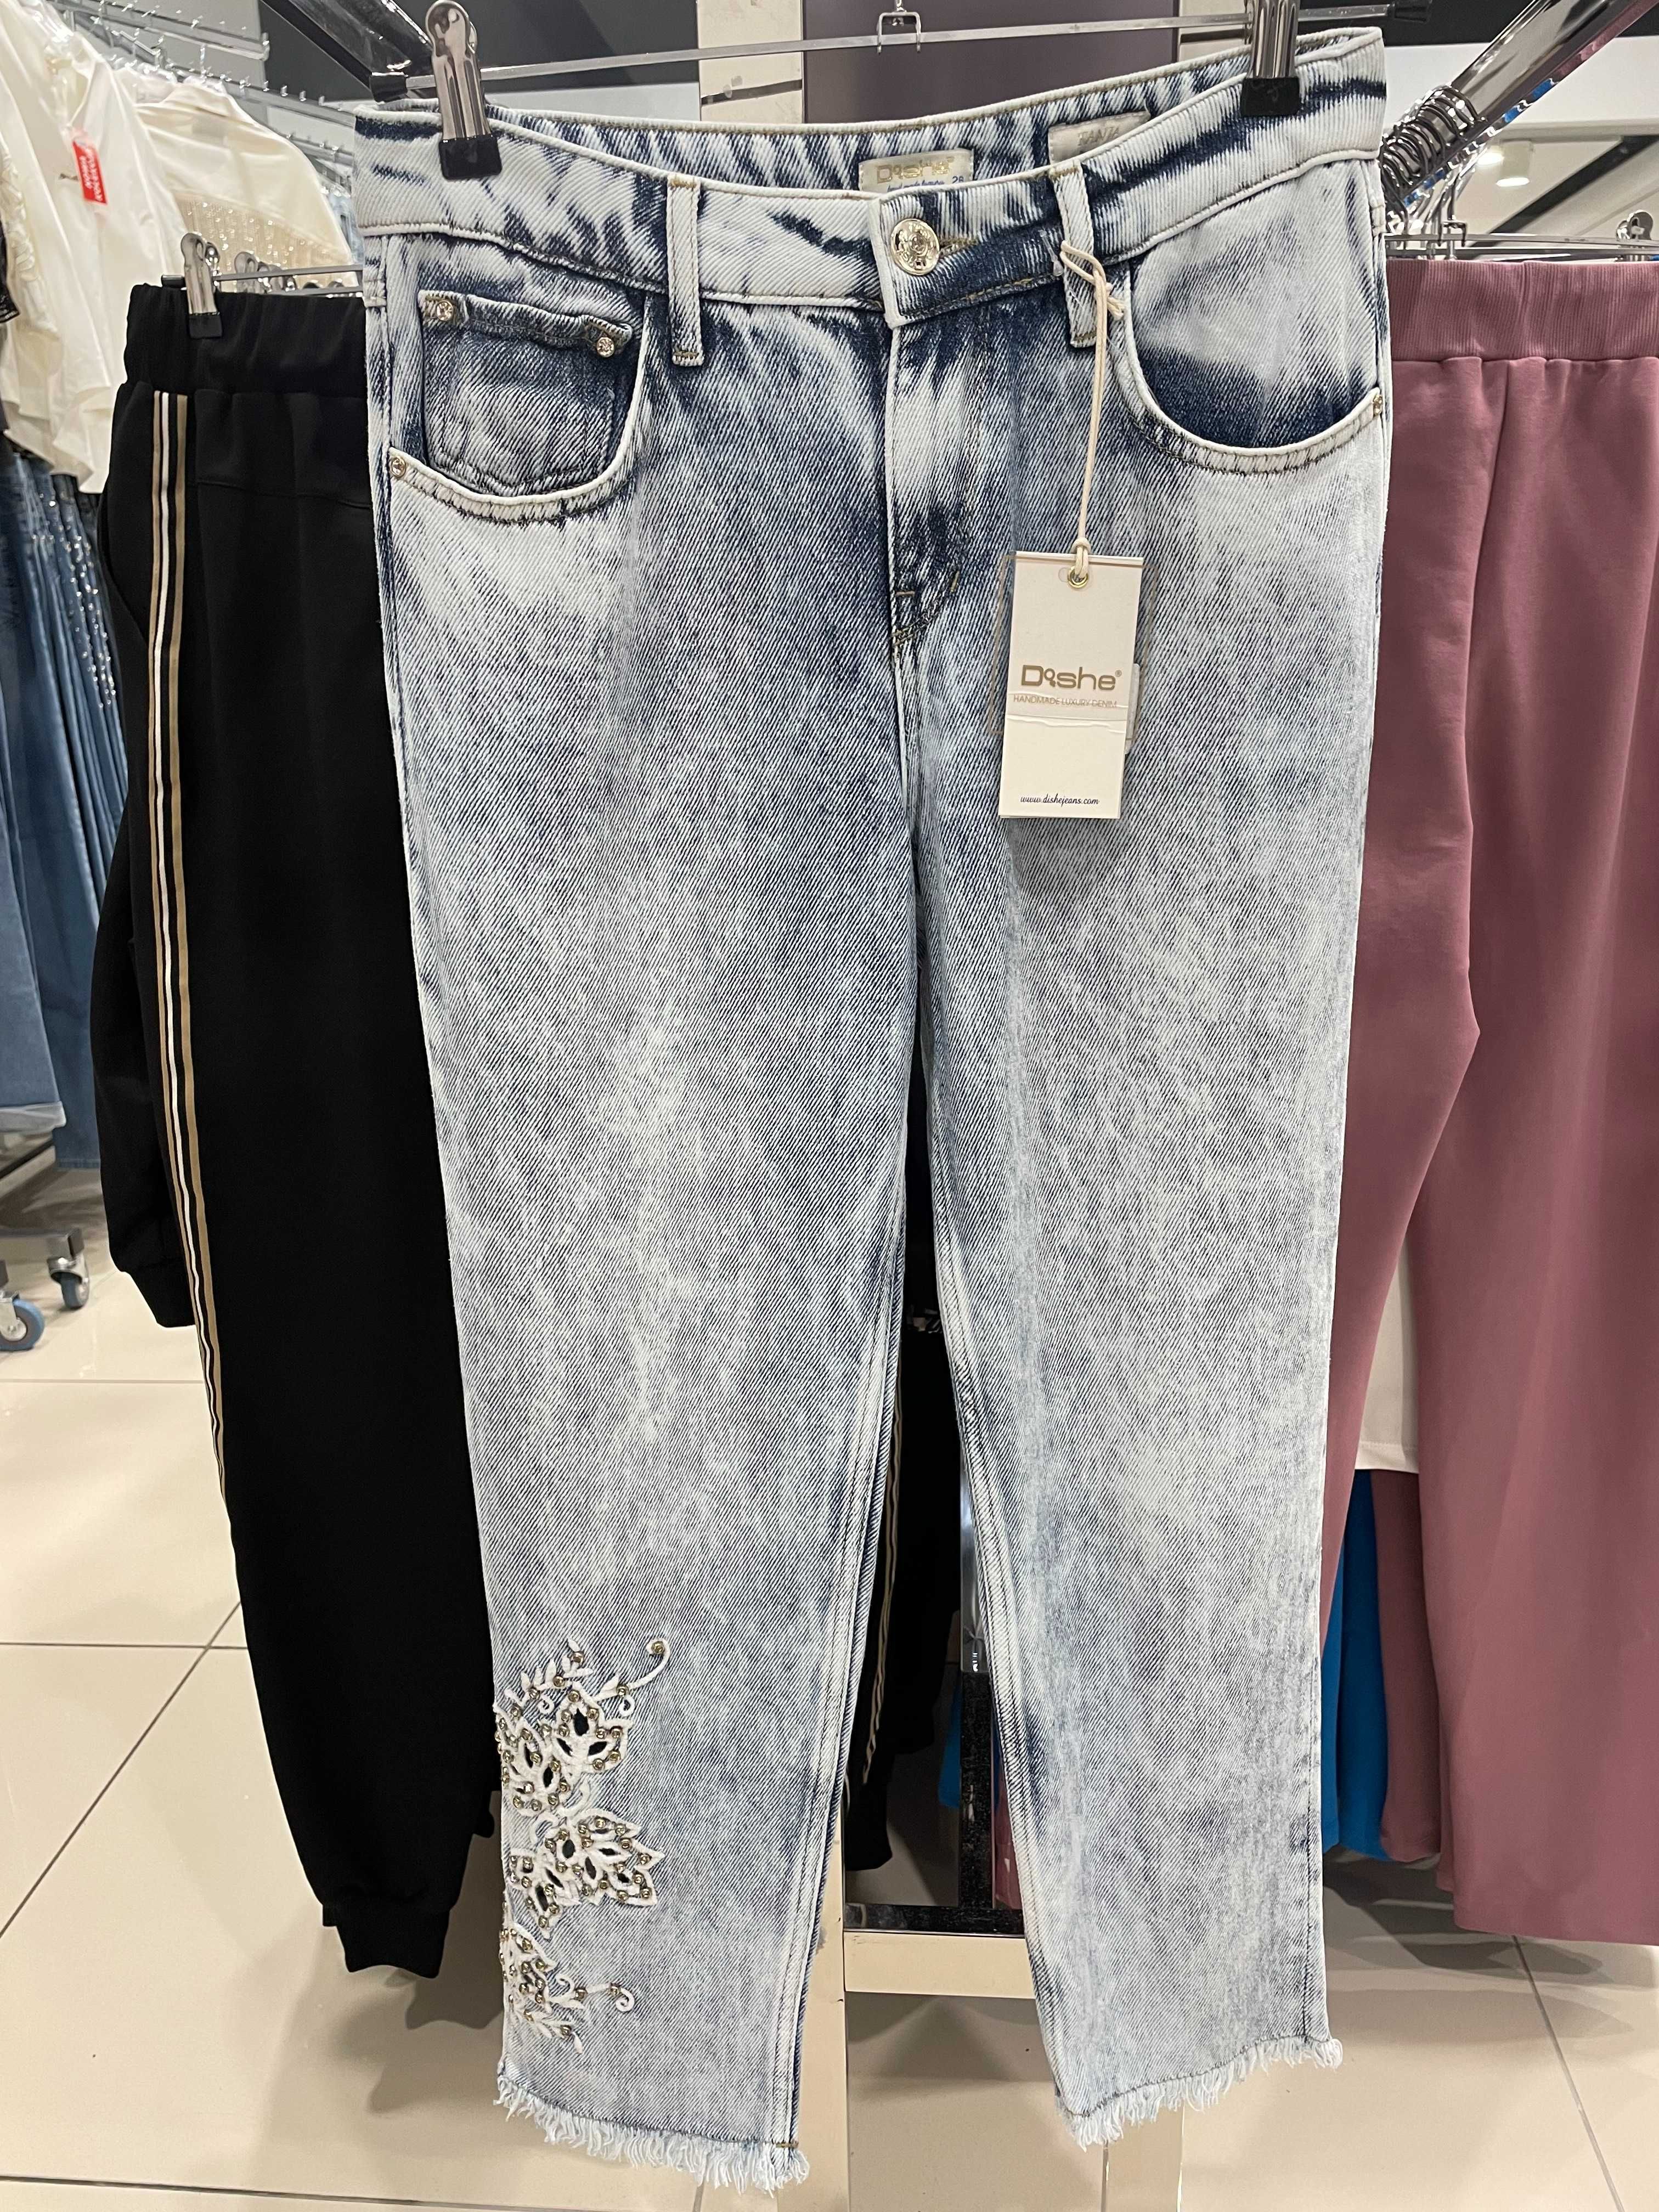 DI'SHE spodnie-jeans  niebieski z cyrkoniami. Kolekcija 2023.